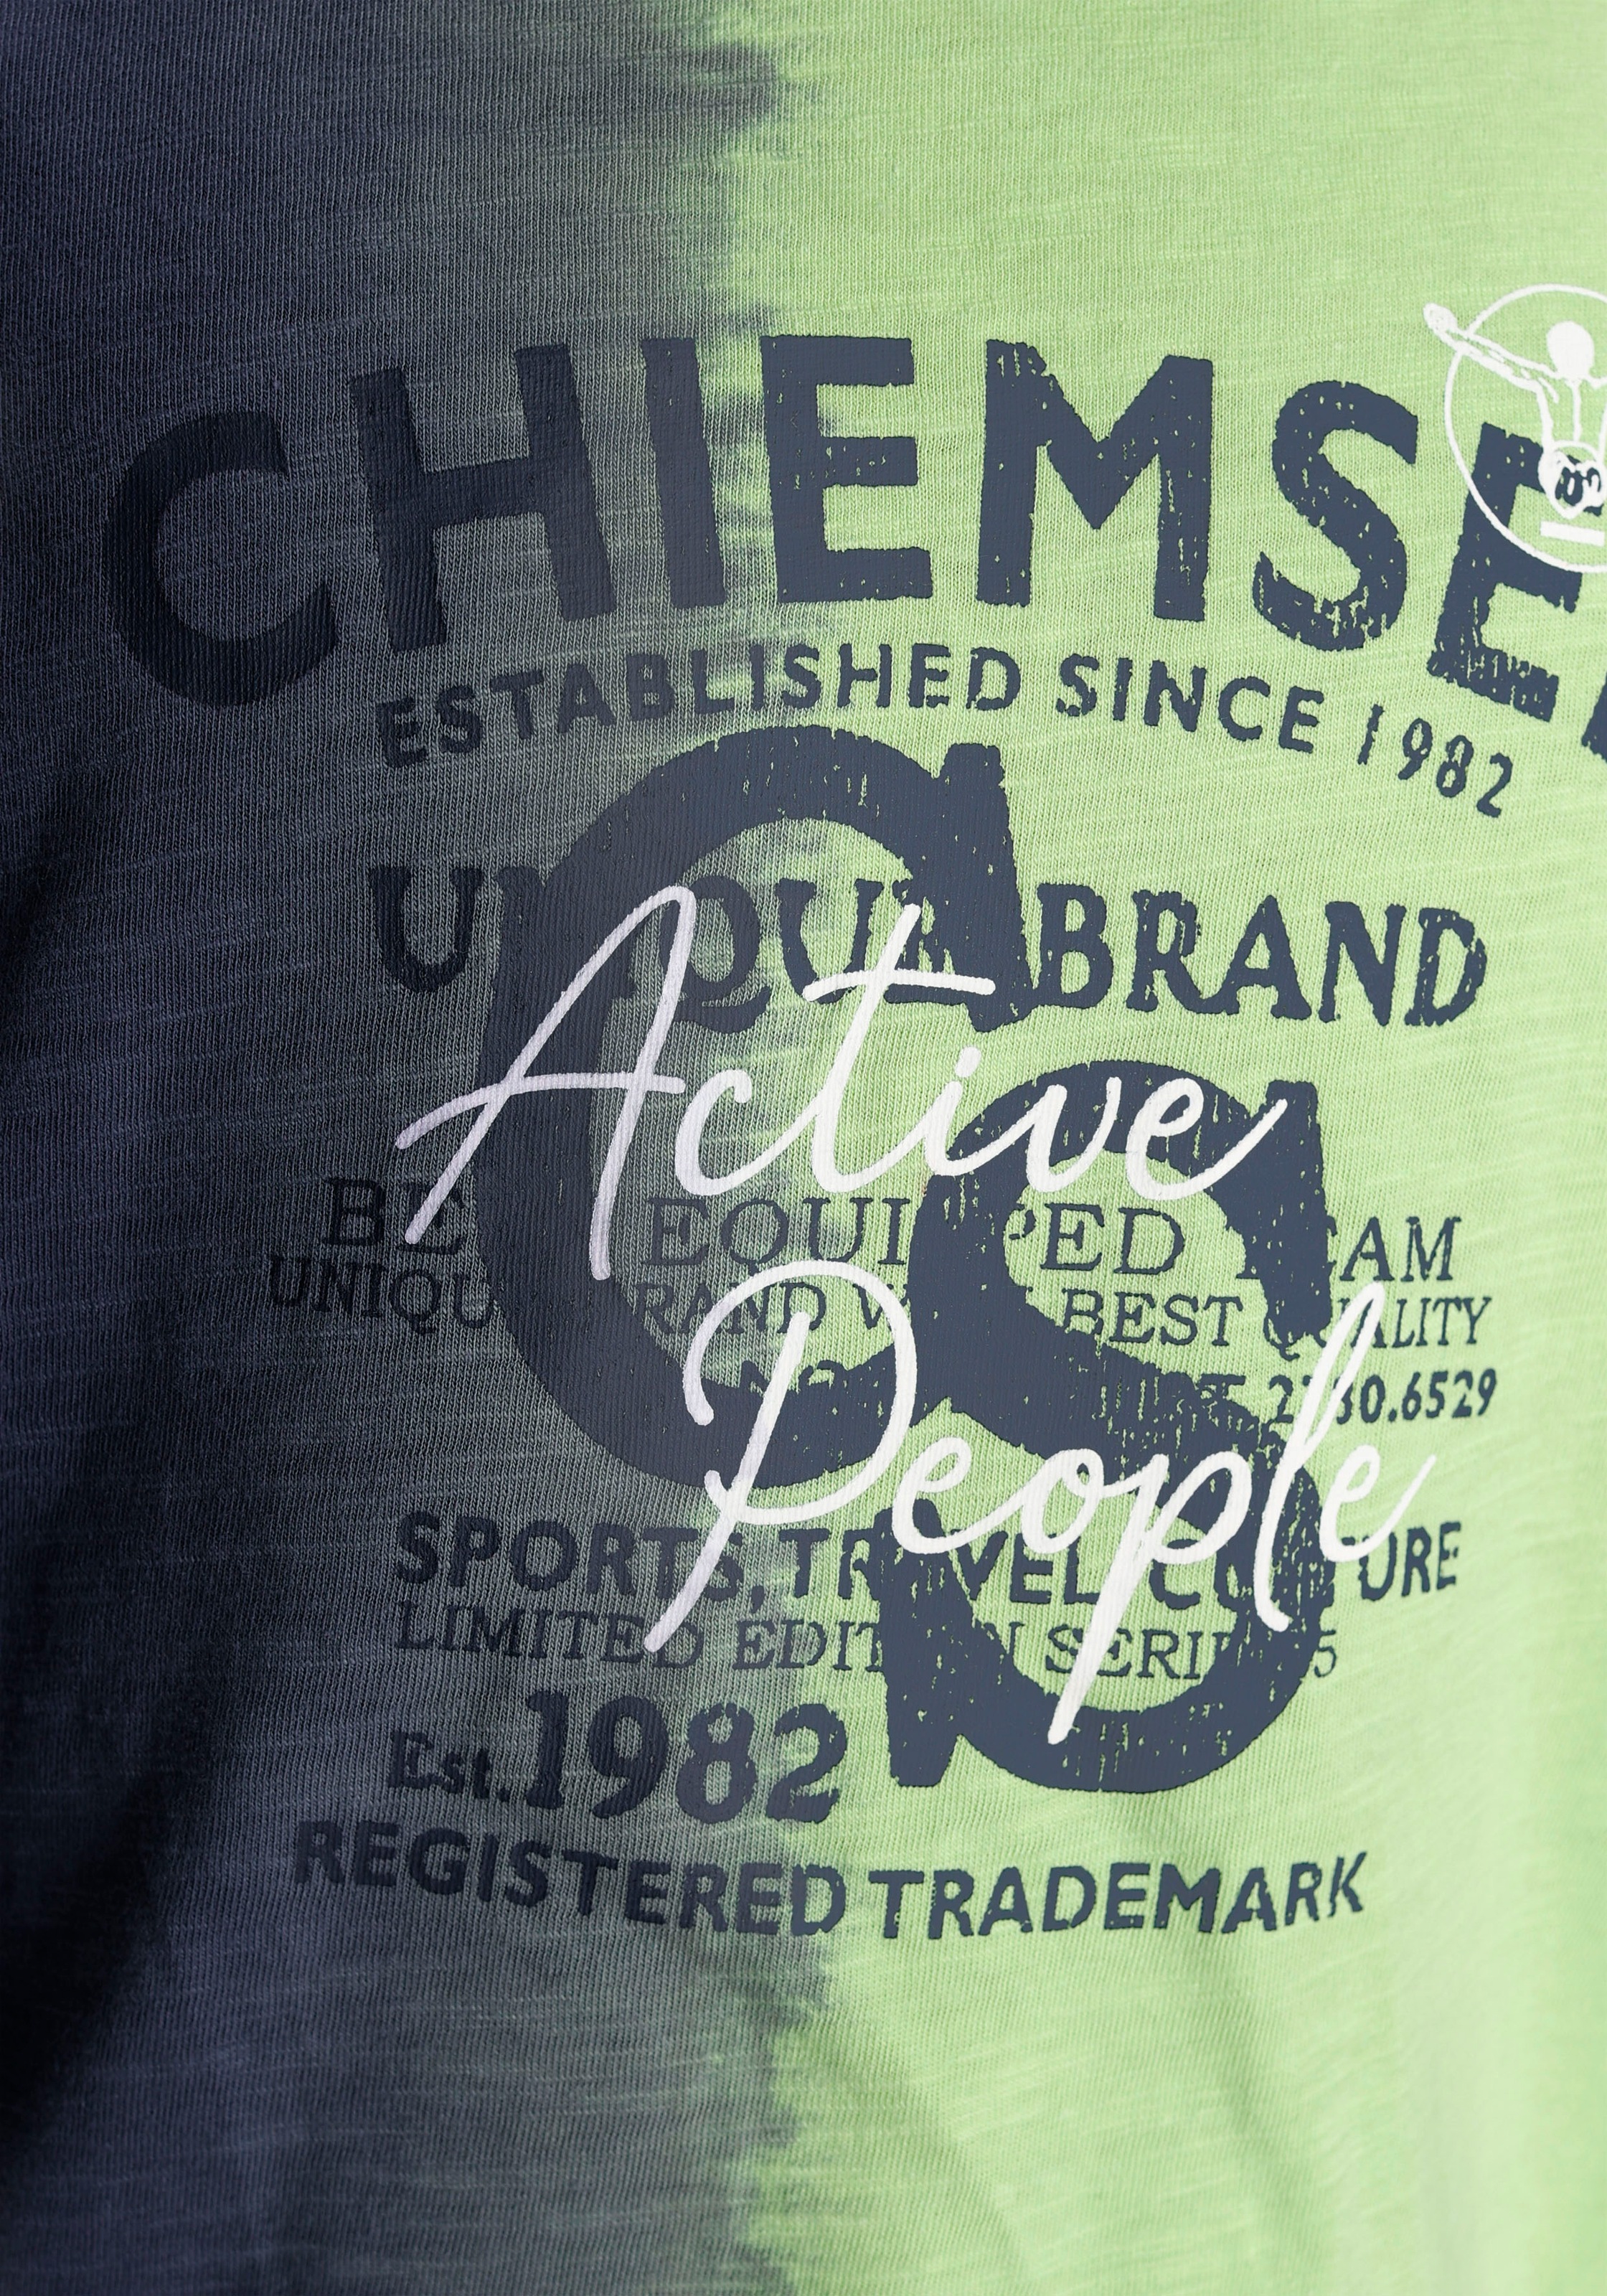 Chiemsee T-Shirt »Farbverlauf«, mit vertikalem Farbverlauf  versandkostenfrei auf